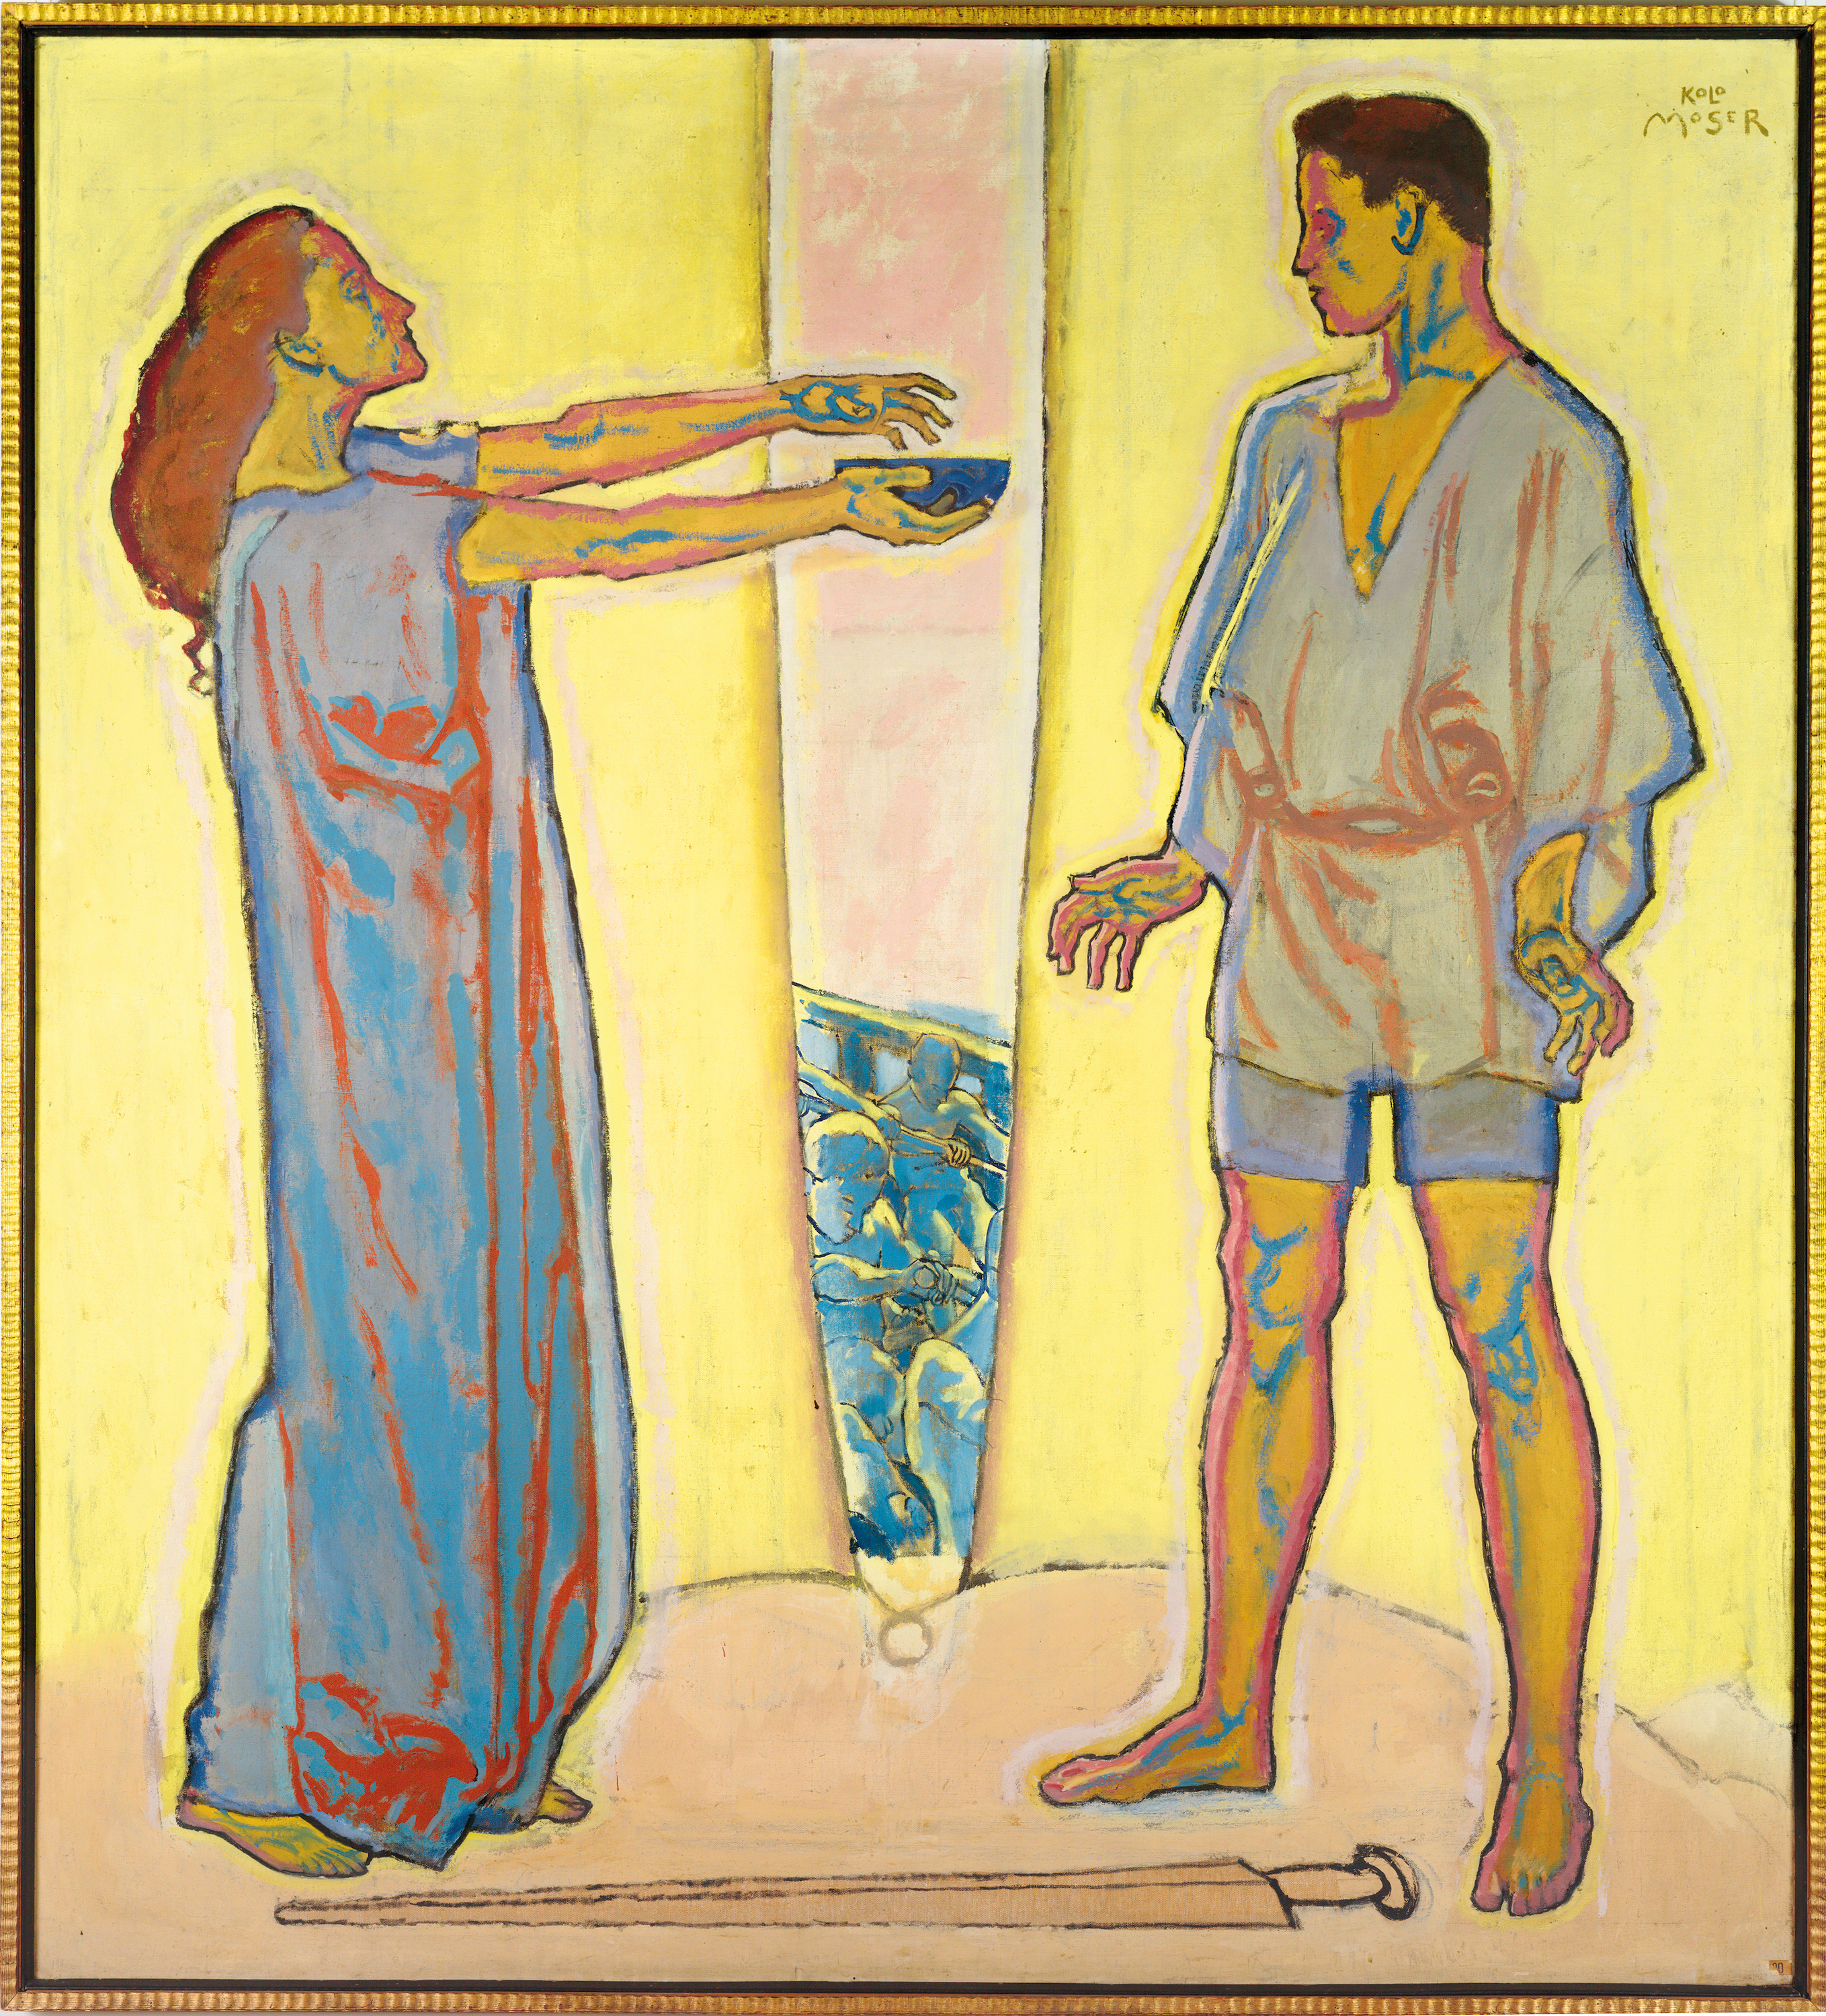 爱情魔药(特里斯坦和伊索尔德) by 科洛曼 莫泽 - 1913 - 195 x 210 cm 利奥波德博物馆